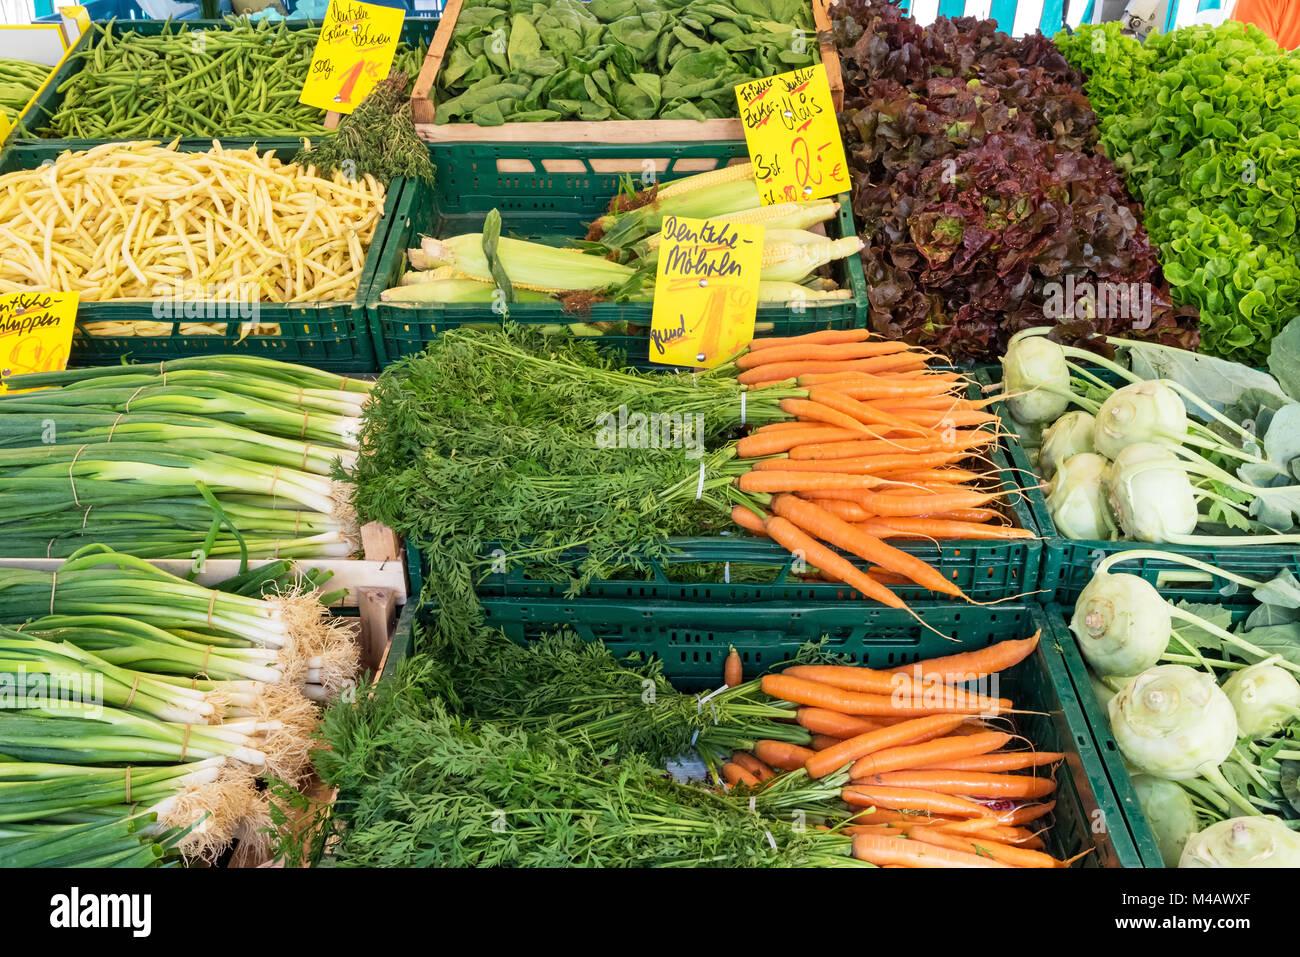 Stand du marché avec des légumes frais pour la vente Banque D'Images